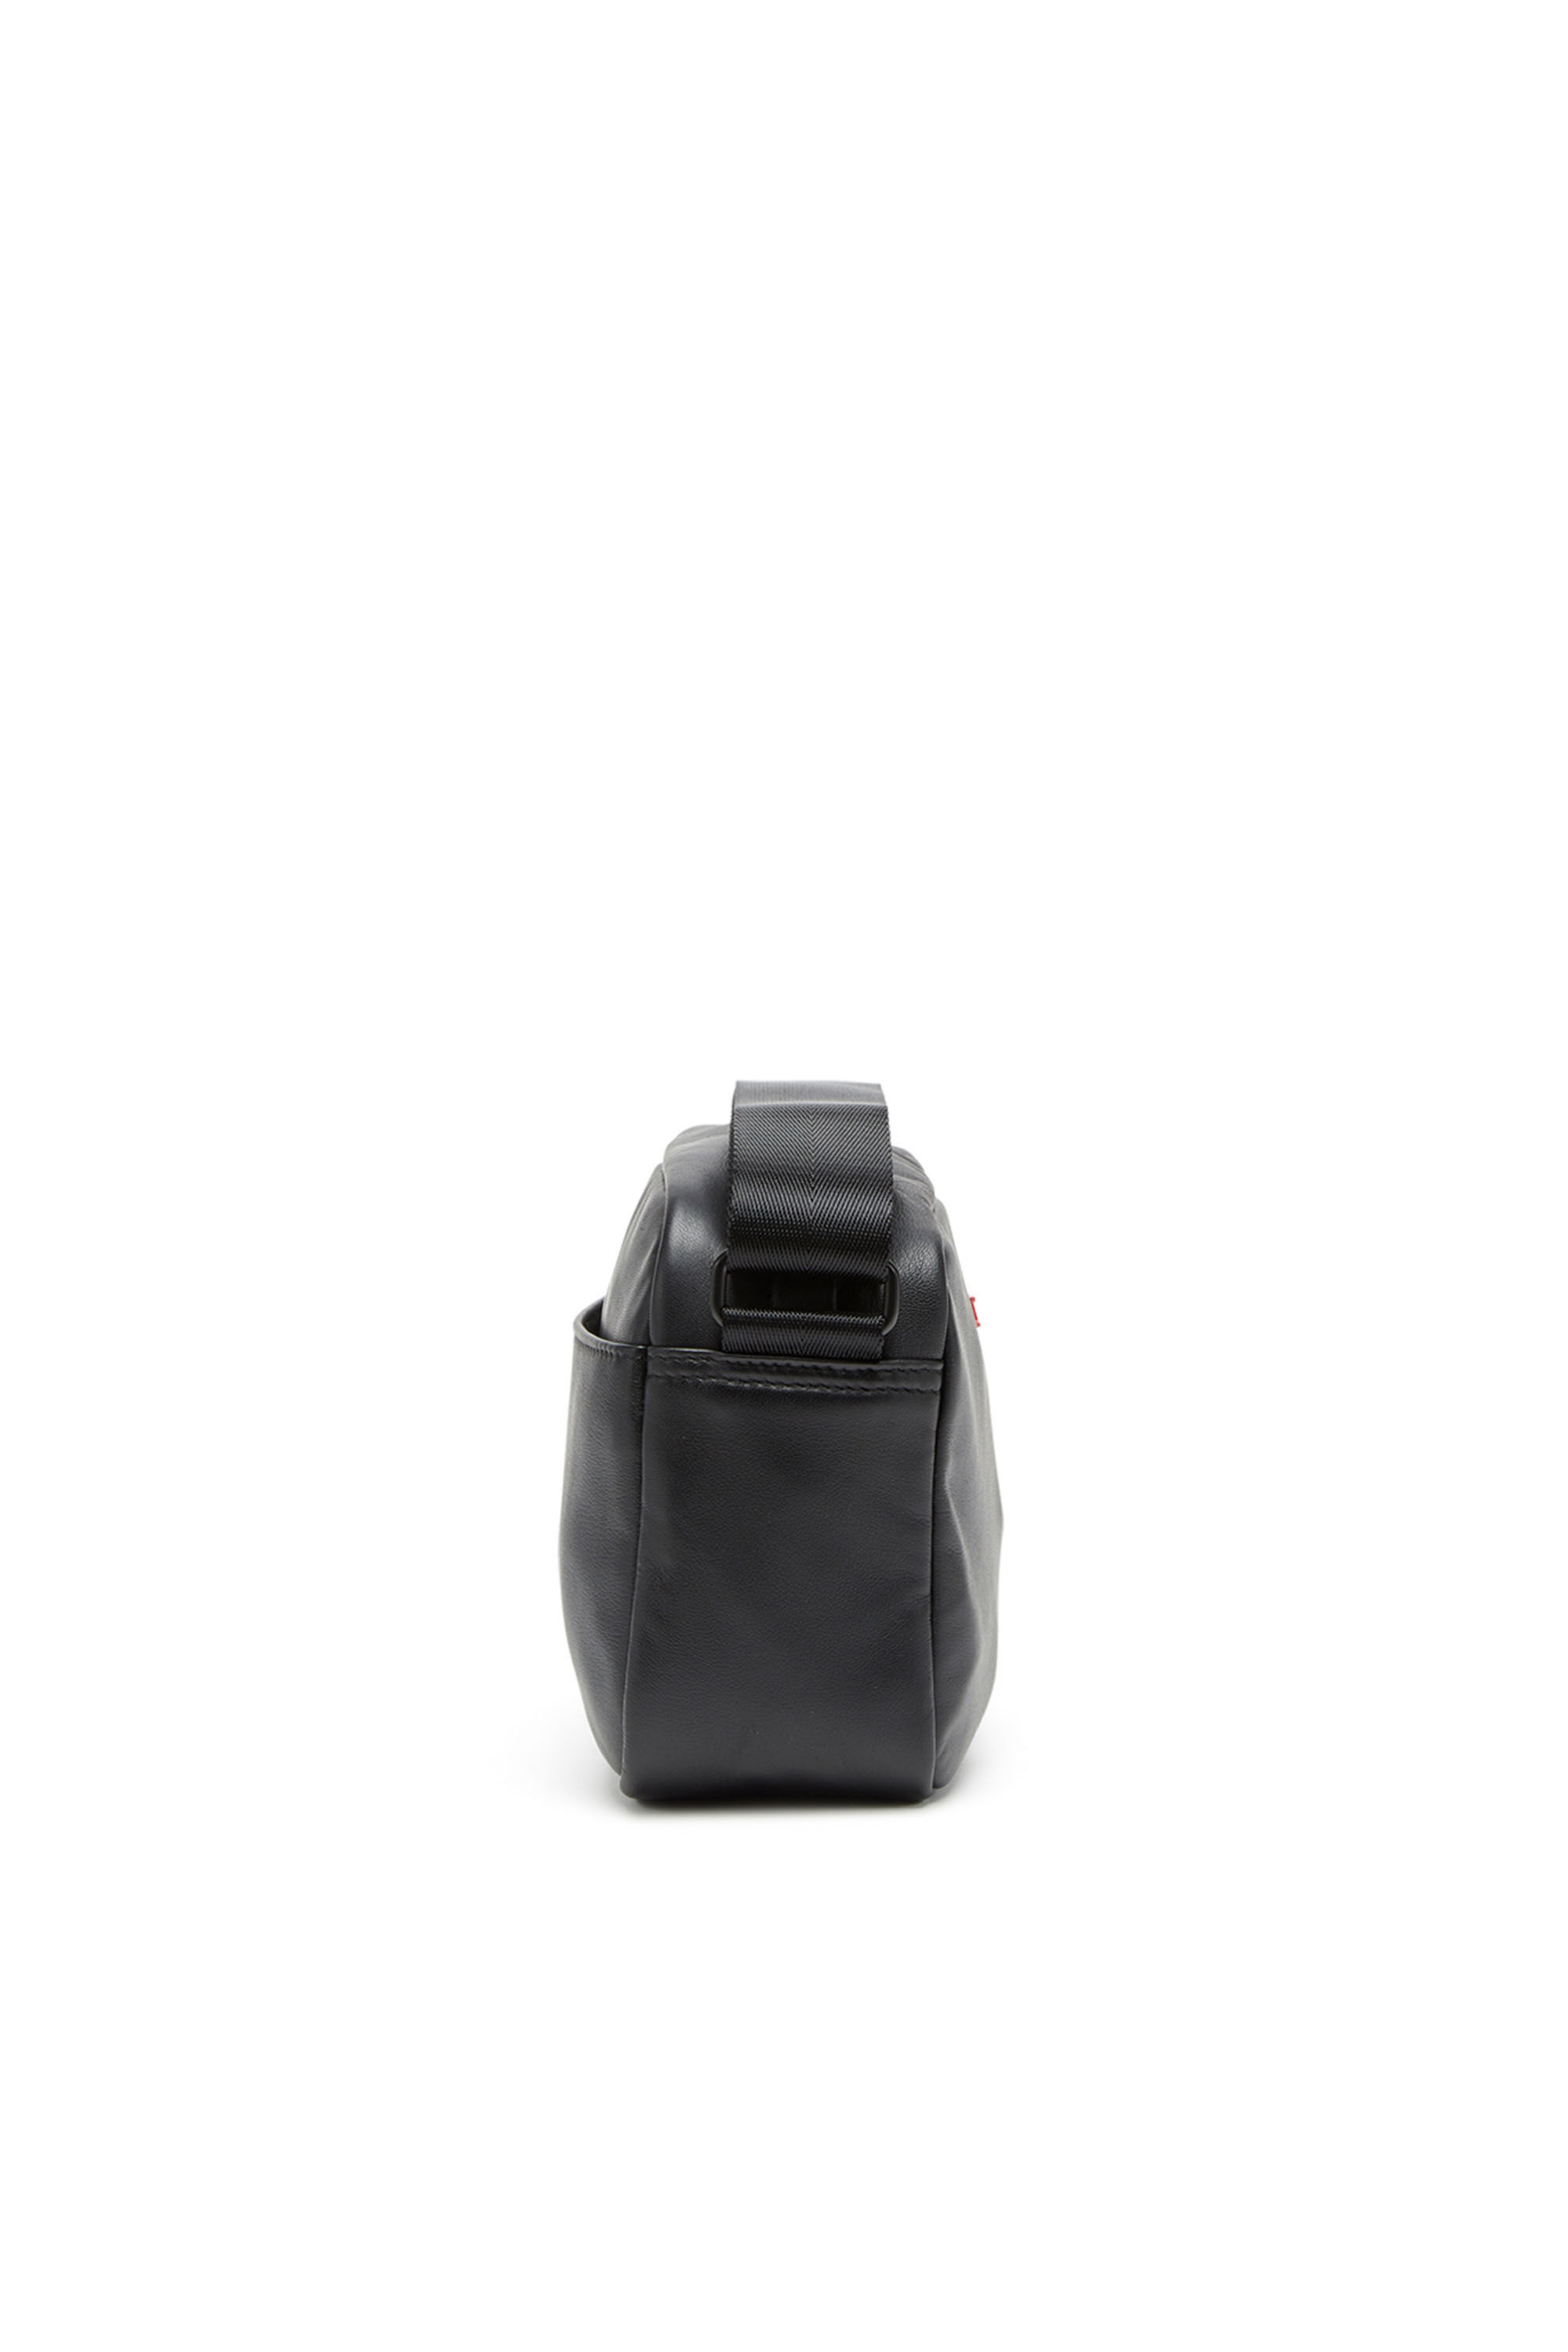 Diesel - RAVE CAMERA BAG X, Man Rave-Camera bag in nappa leather in Black - Image 4